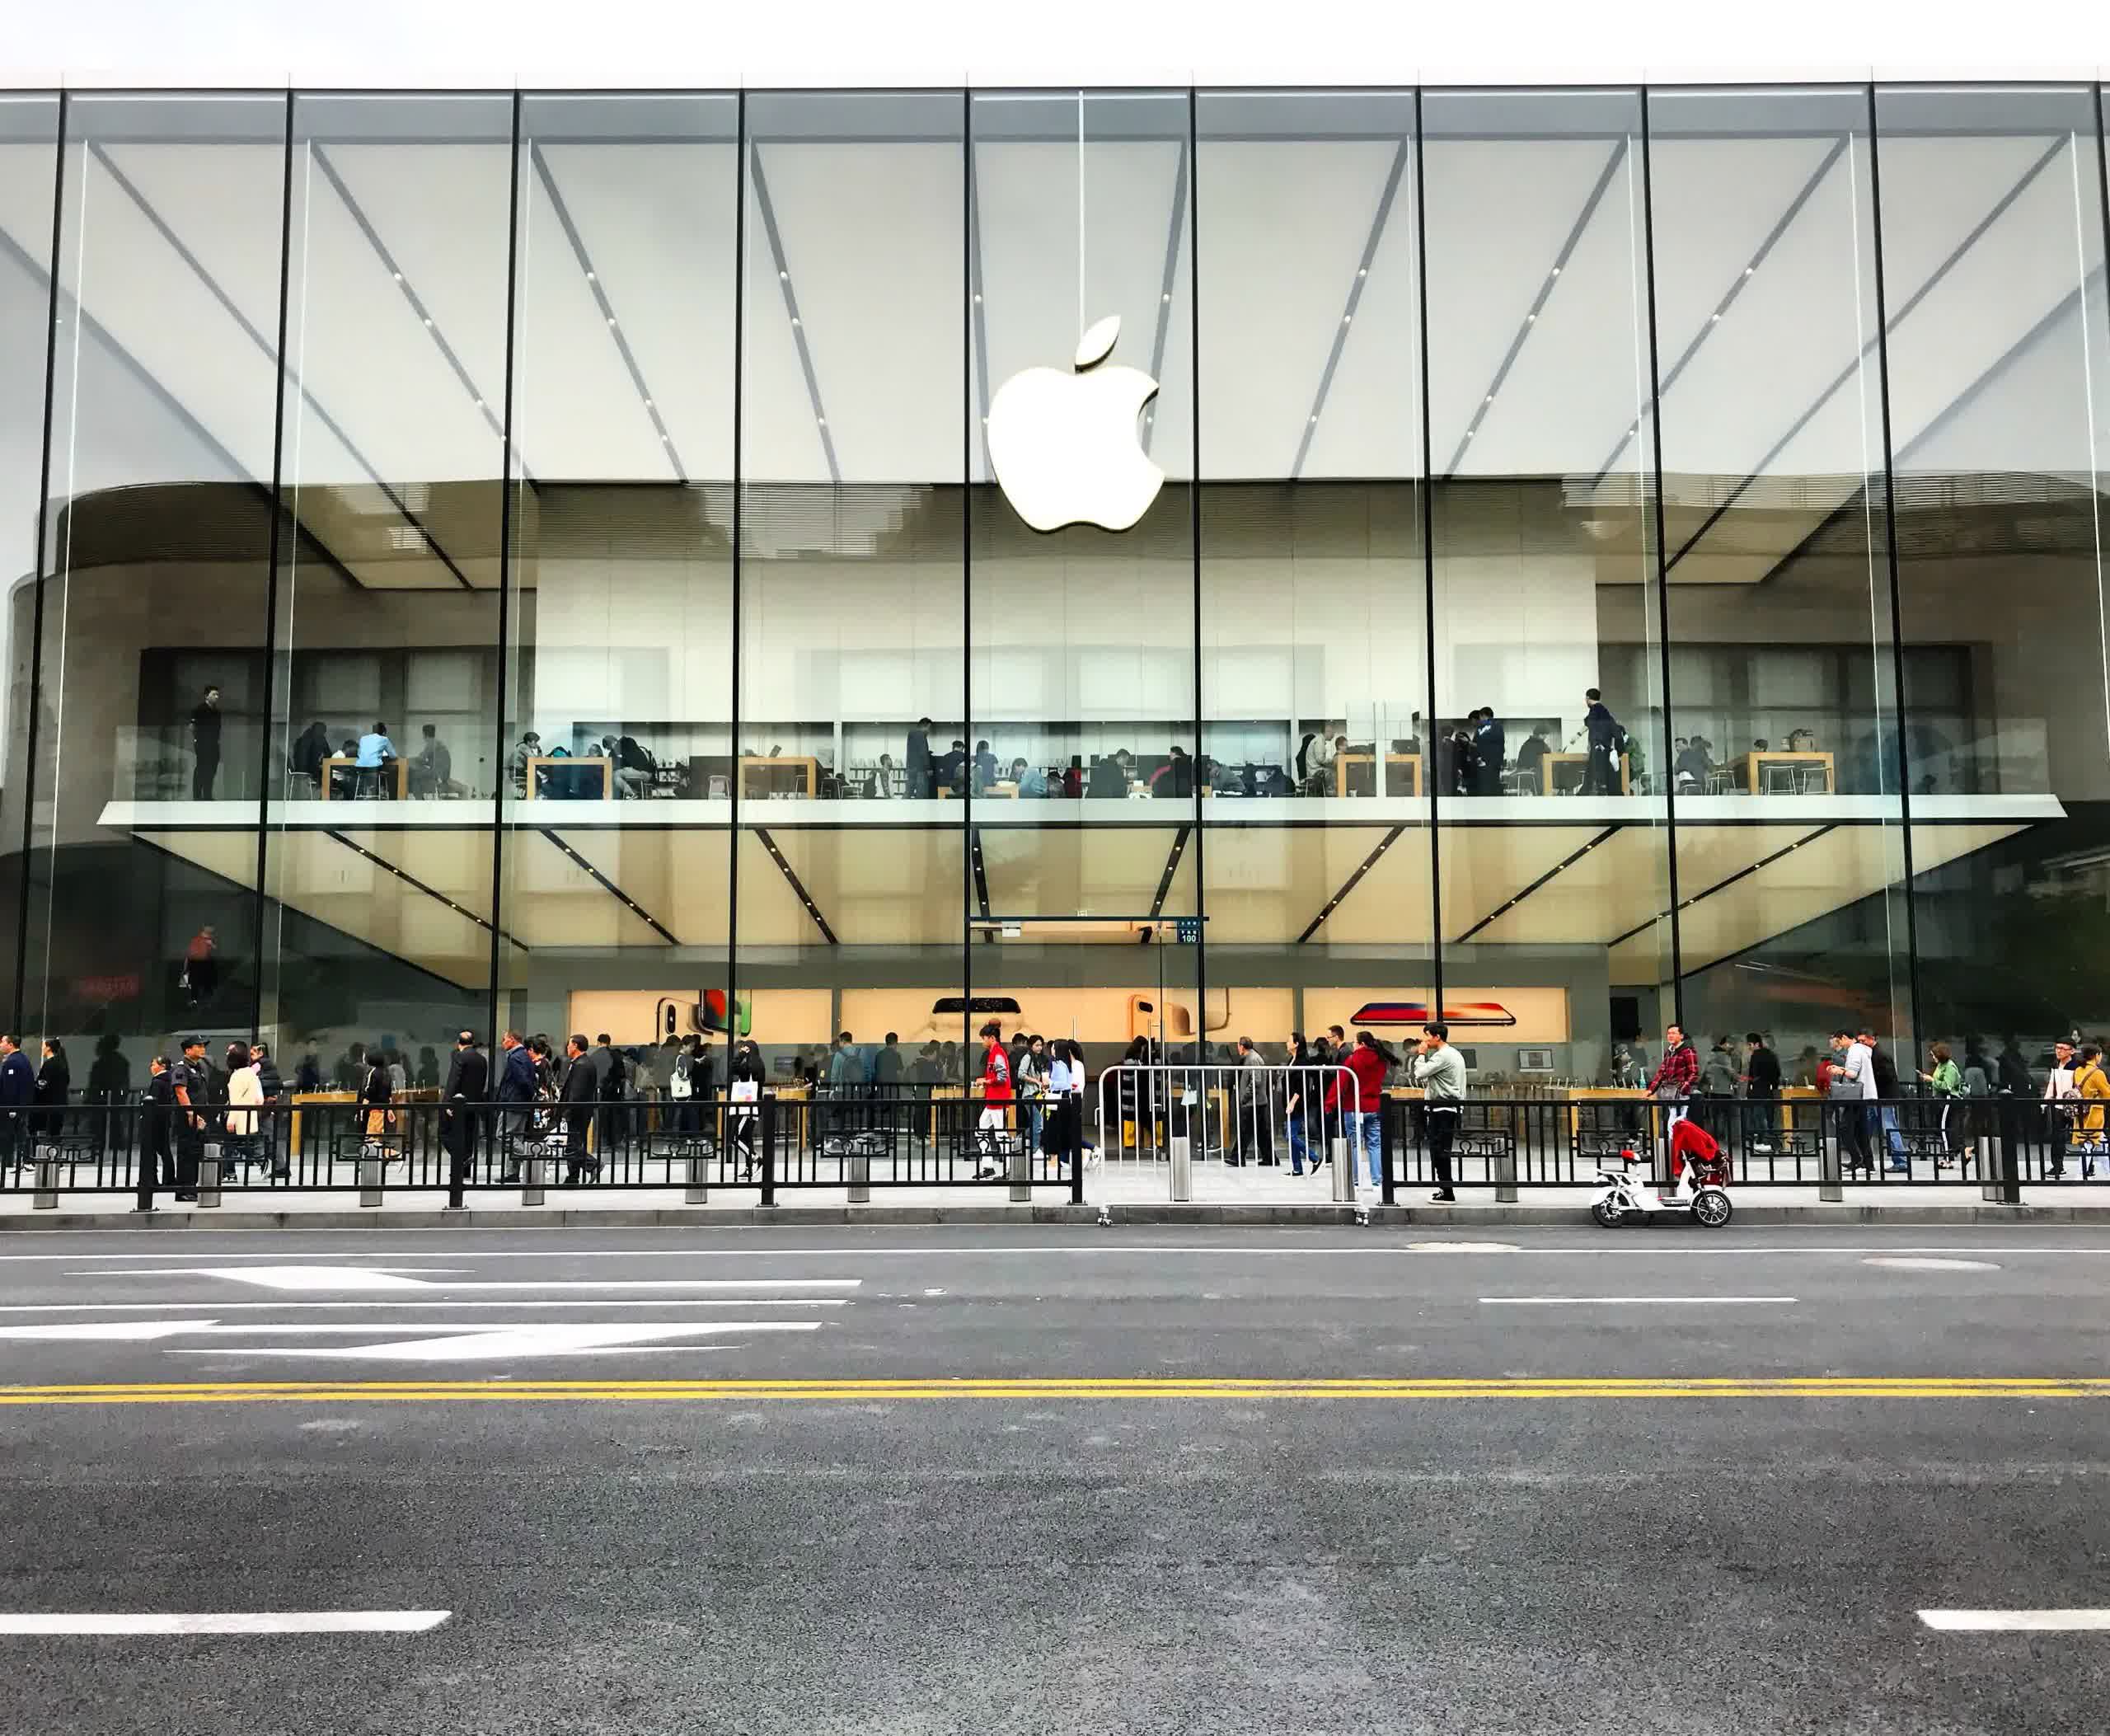 Las ventas de iPhone caen en China: una caída del 30% se suma a los tiempos difíciles de Apple